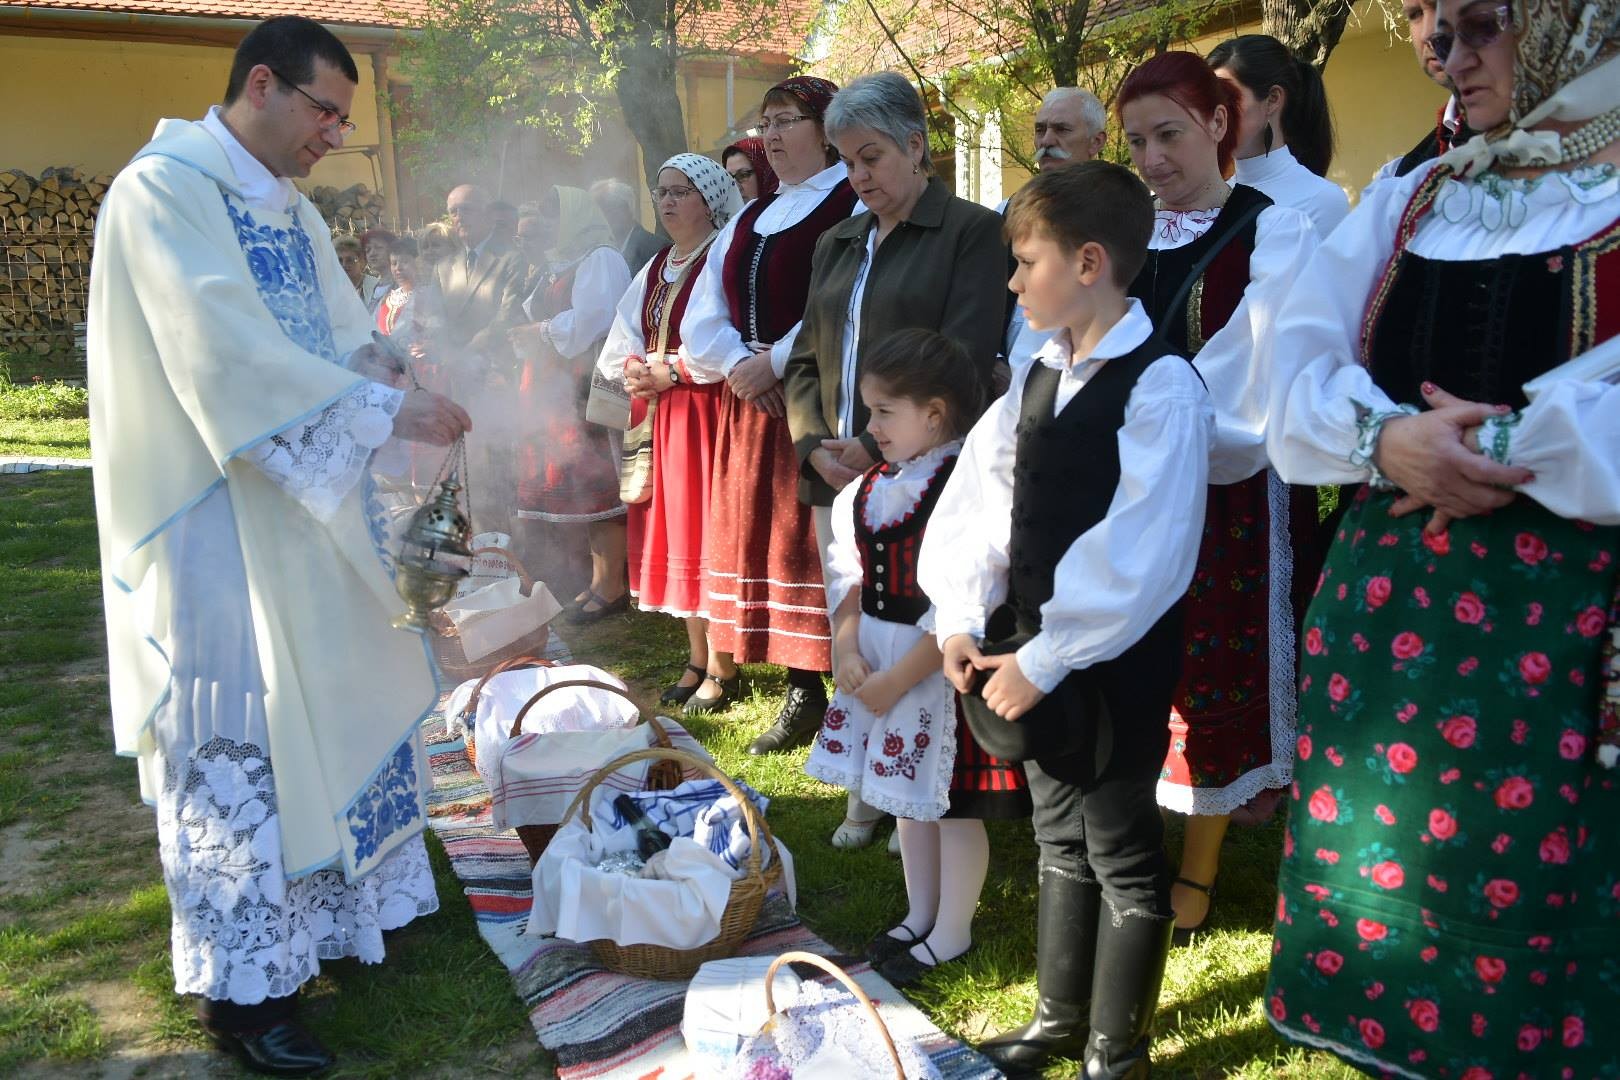 Bukovinai székely szokás szerinti ételszentelést tartottak Kismányokon